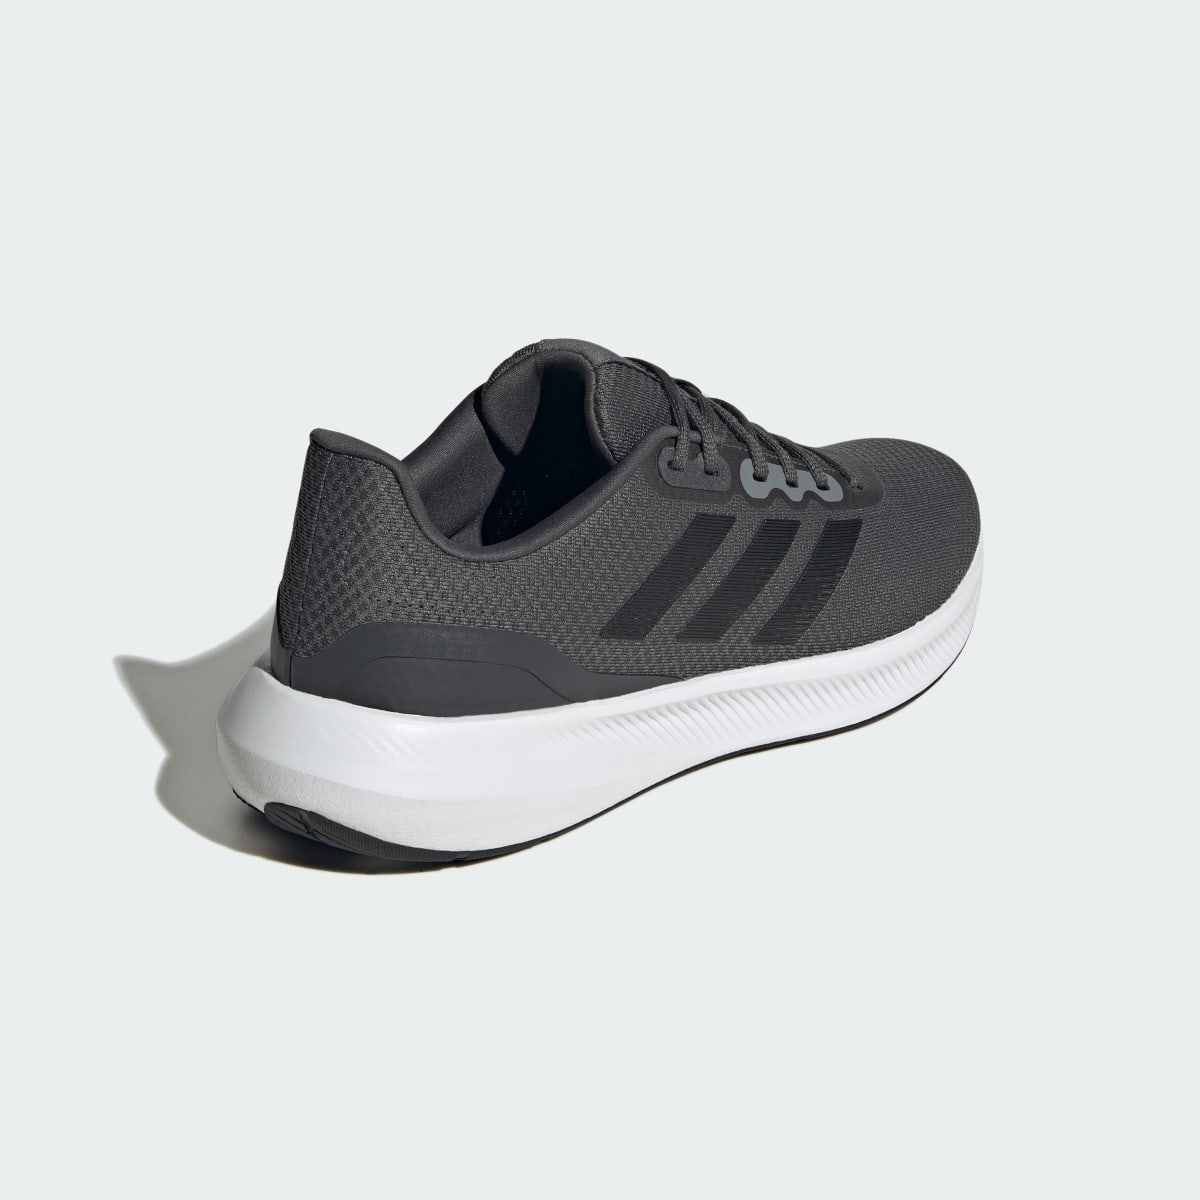 Adidas Runfalcon 3 Cloudfoam Low Running Shoes. 6